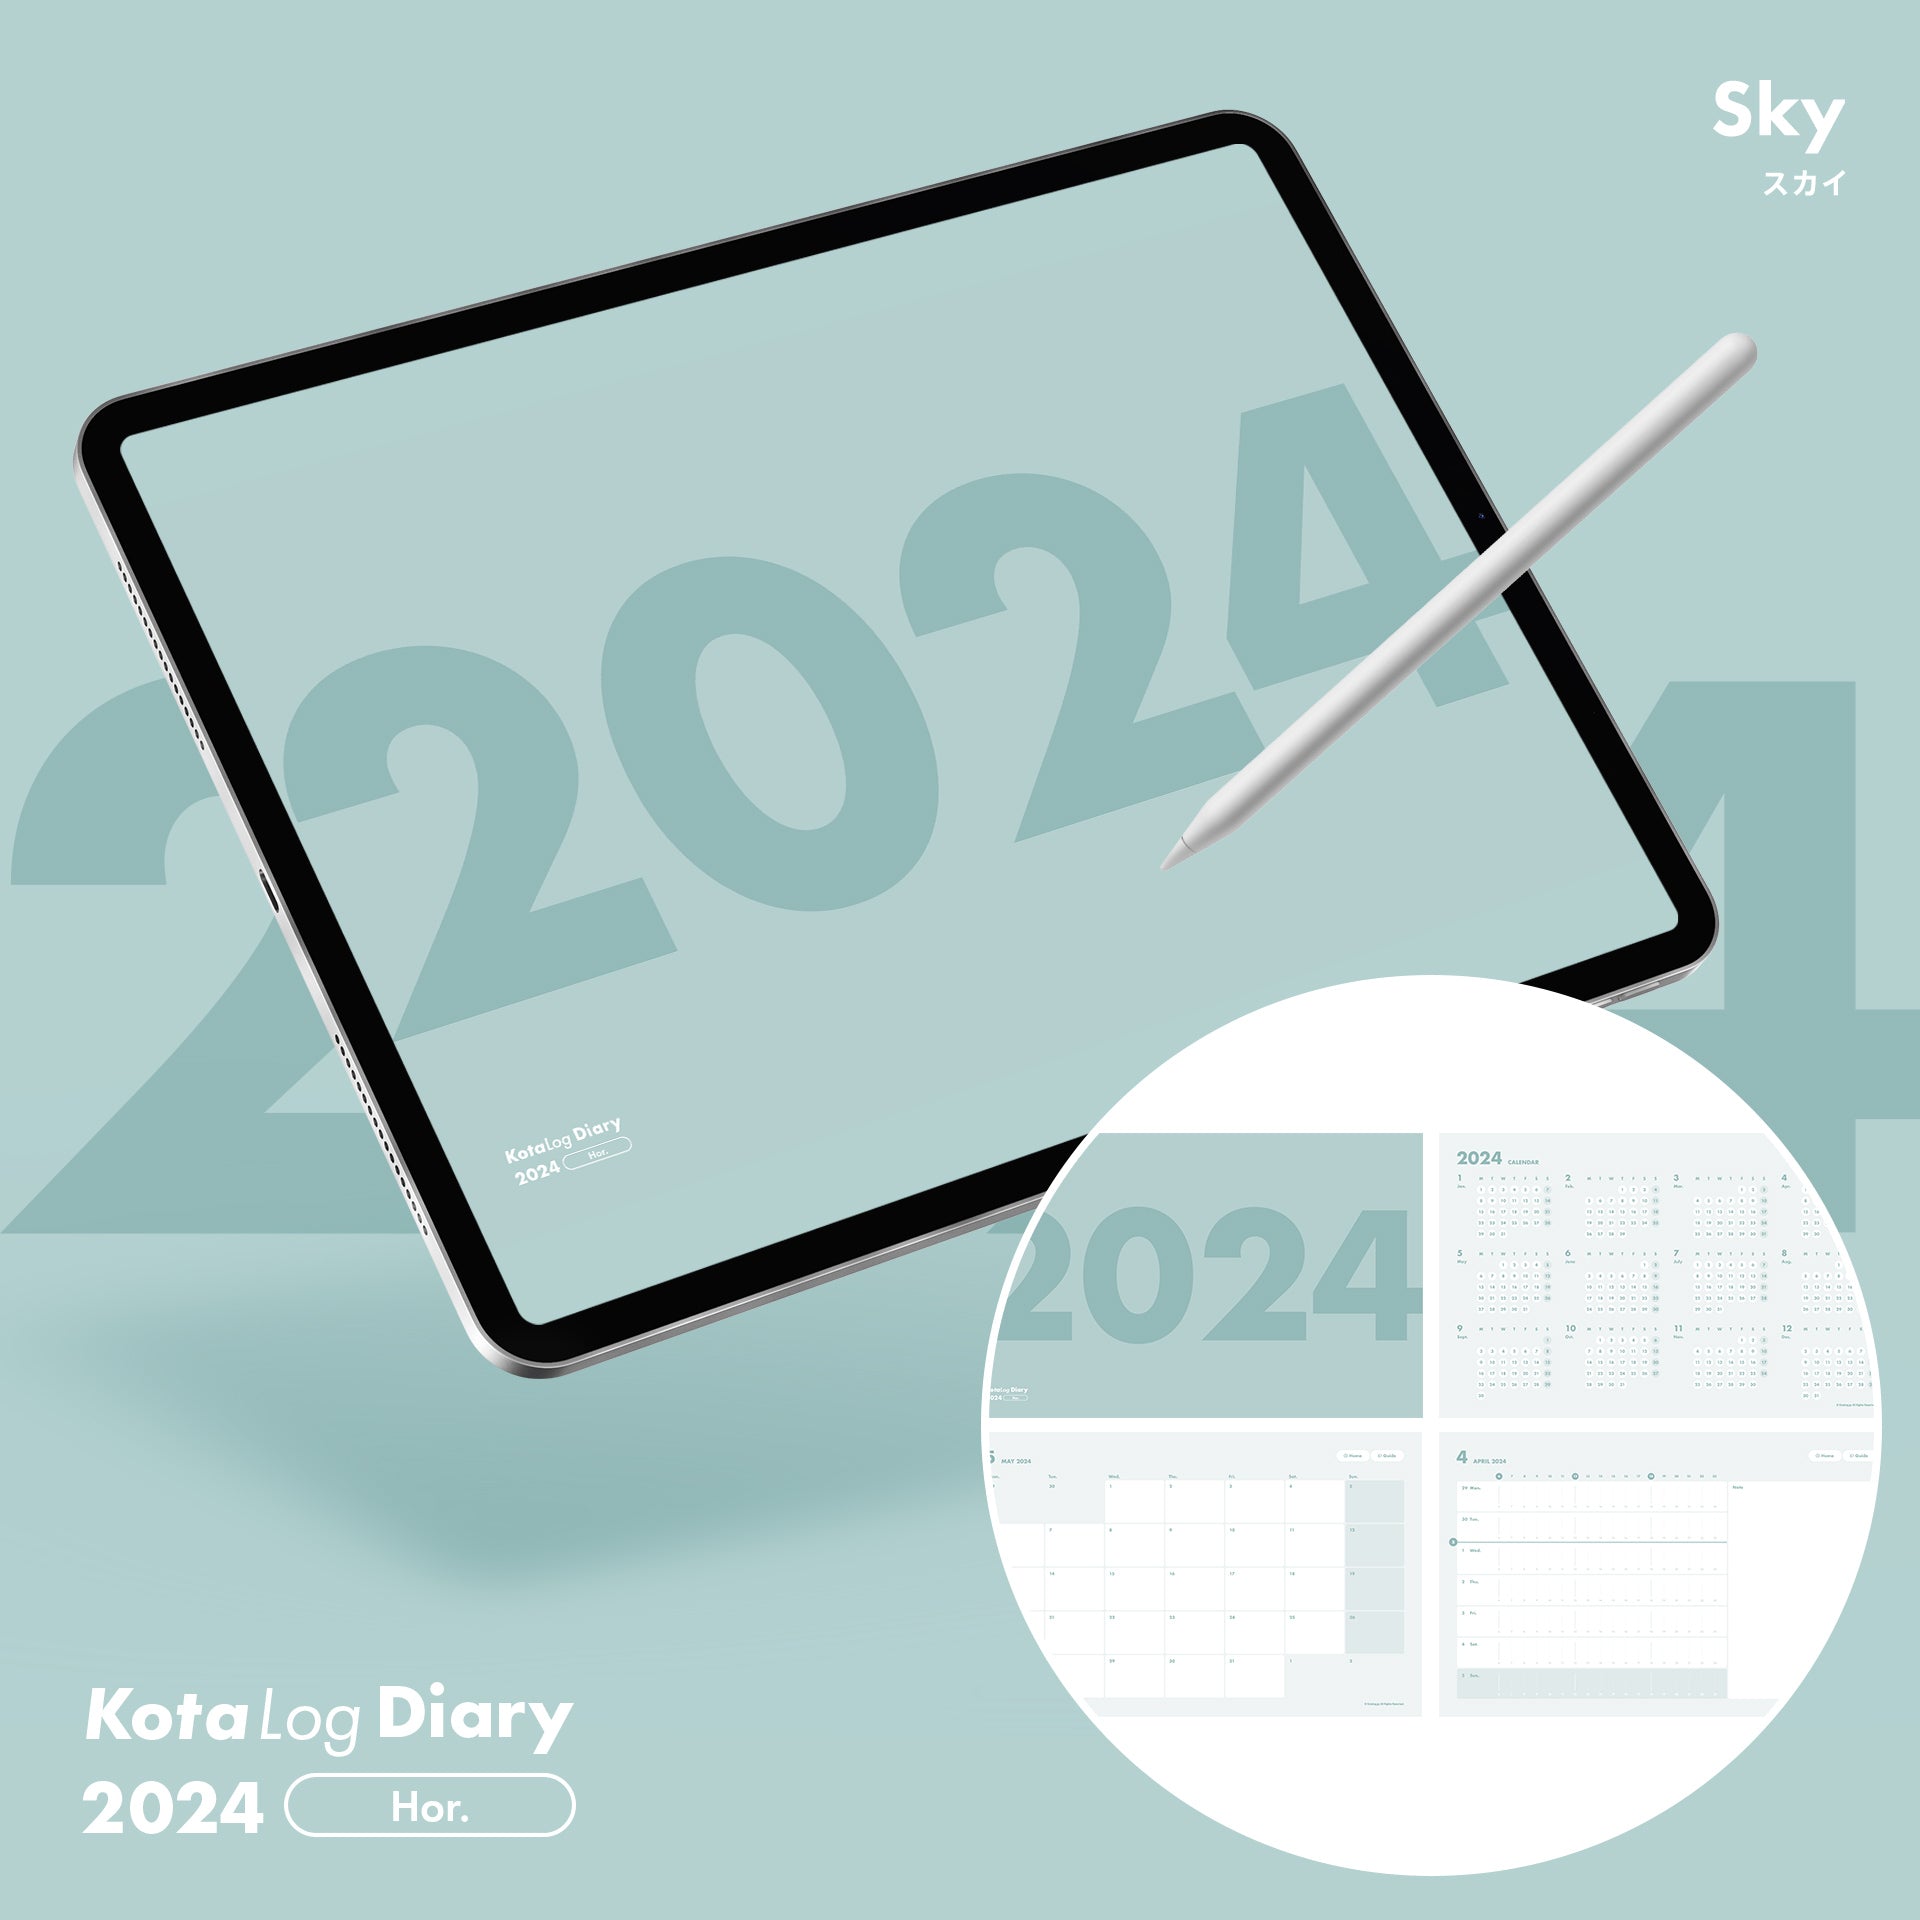 KotaLog Diary 2024  Hor.